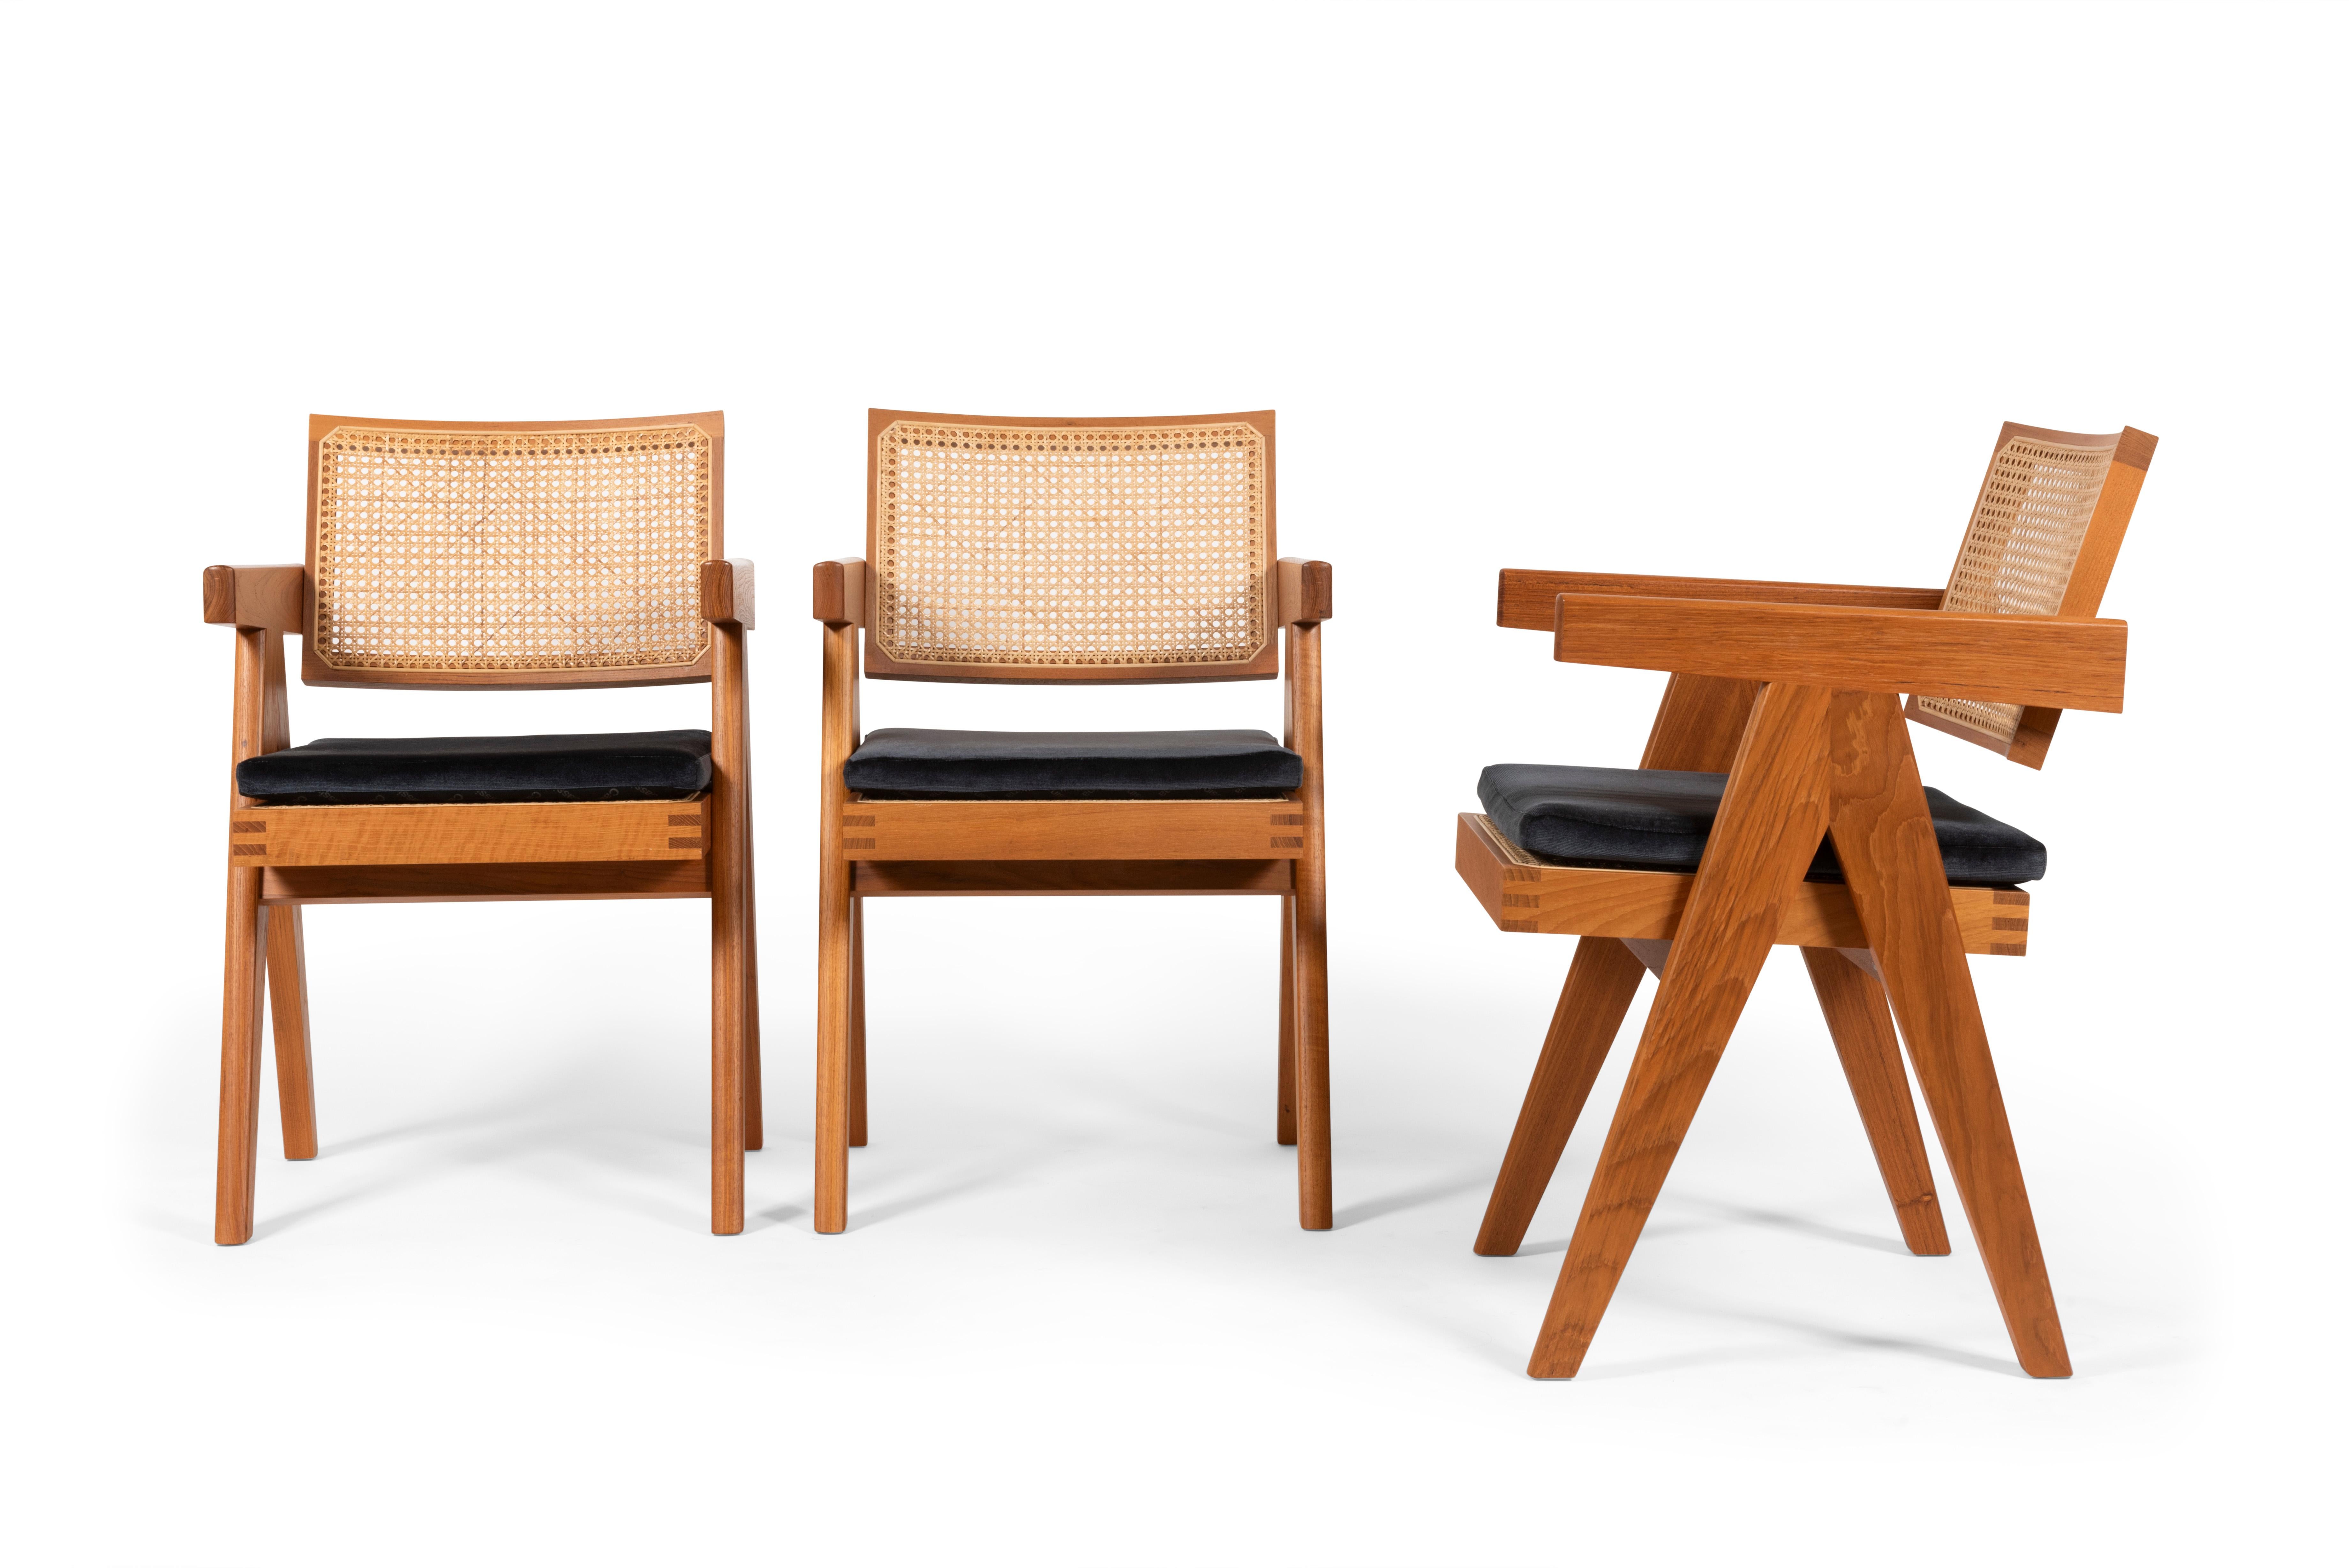 Ensemble de 3 chaises conçues par Pierre Jeanneret vers 1950, relancées en 2019 par Cassina, Italie.

La chaise 